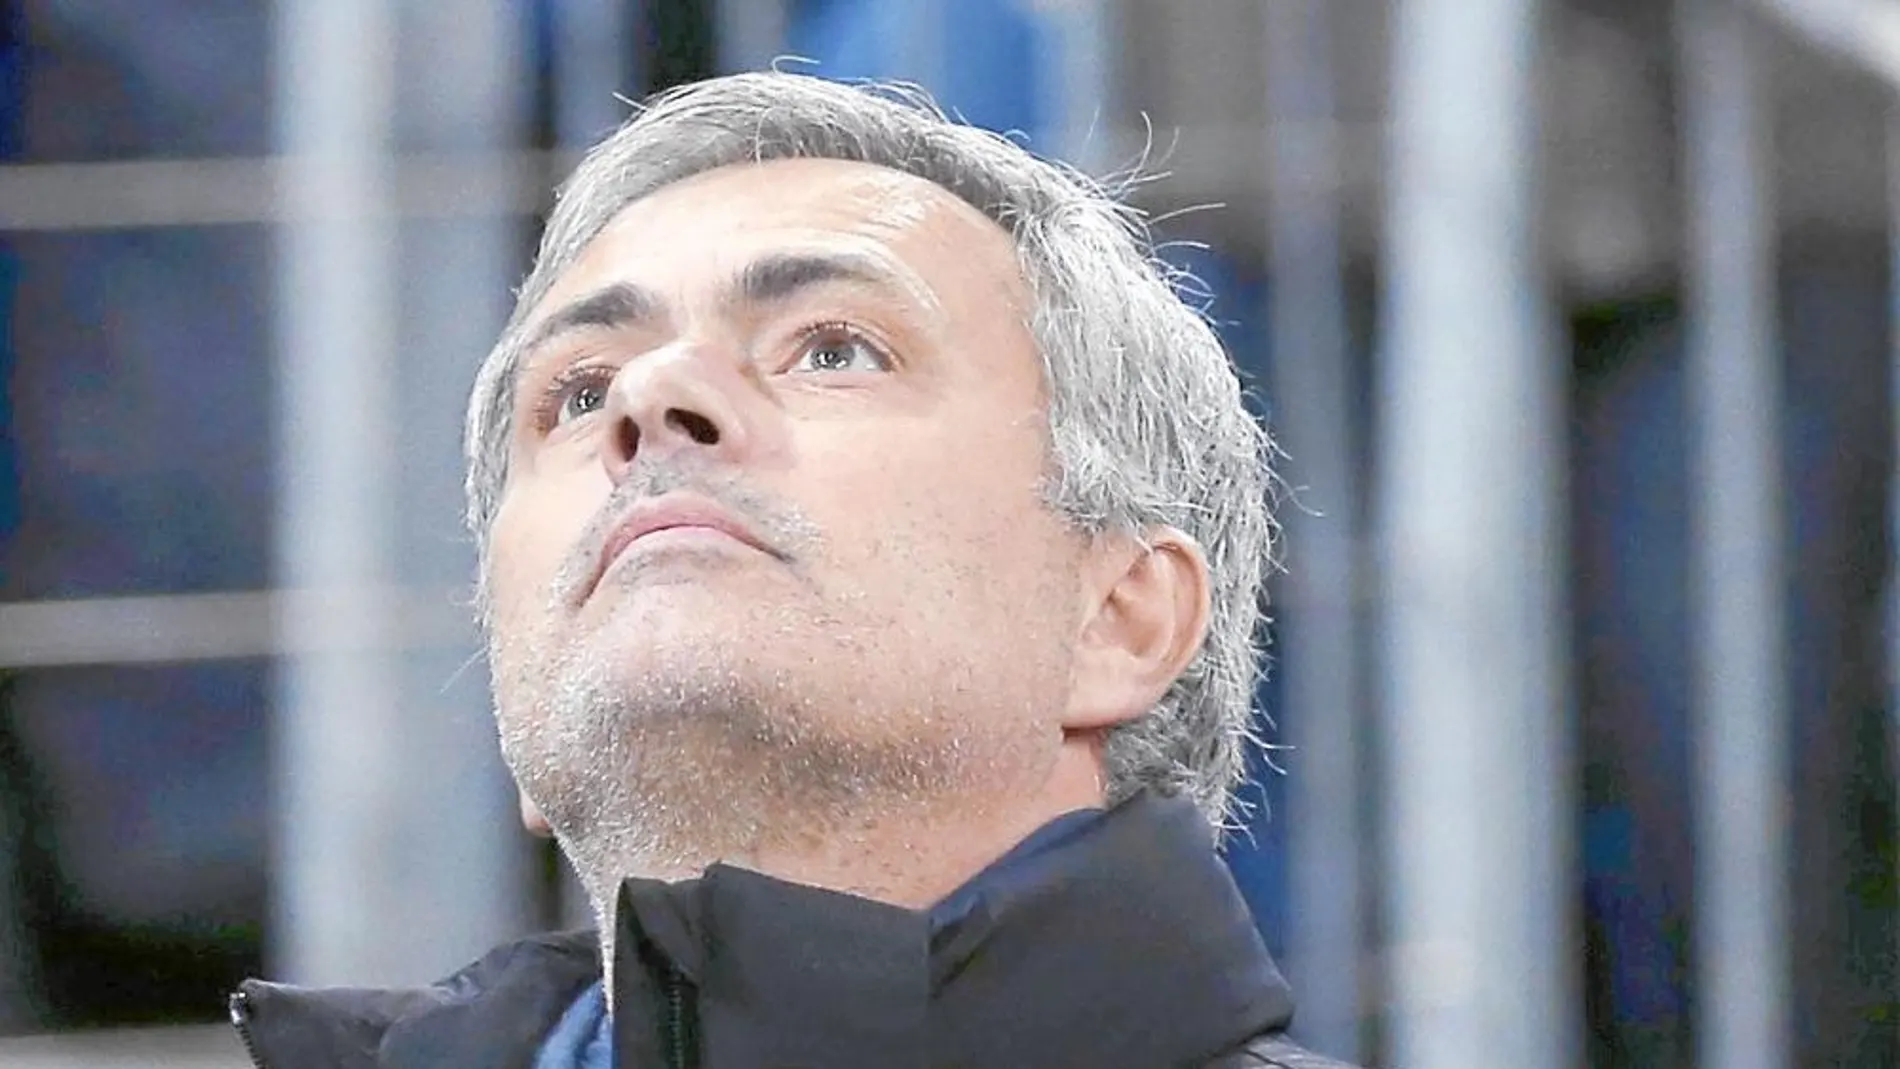 Cara a cara: ¿Ha hecho Ancelotti olvidar a Mourinho?